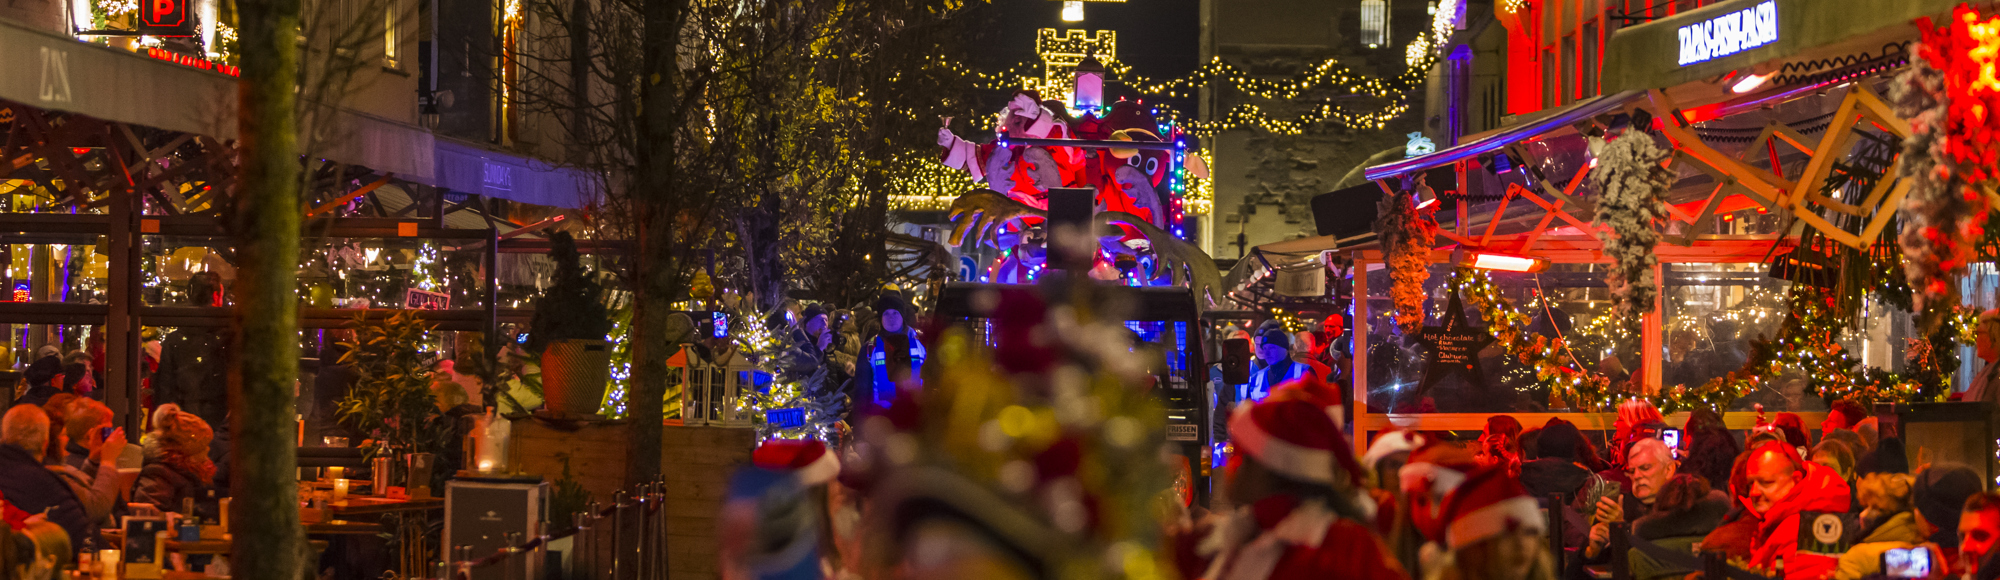 Christmas Fairytales Parade Kerstman En Rendier